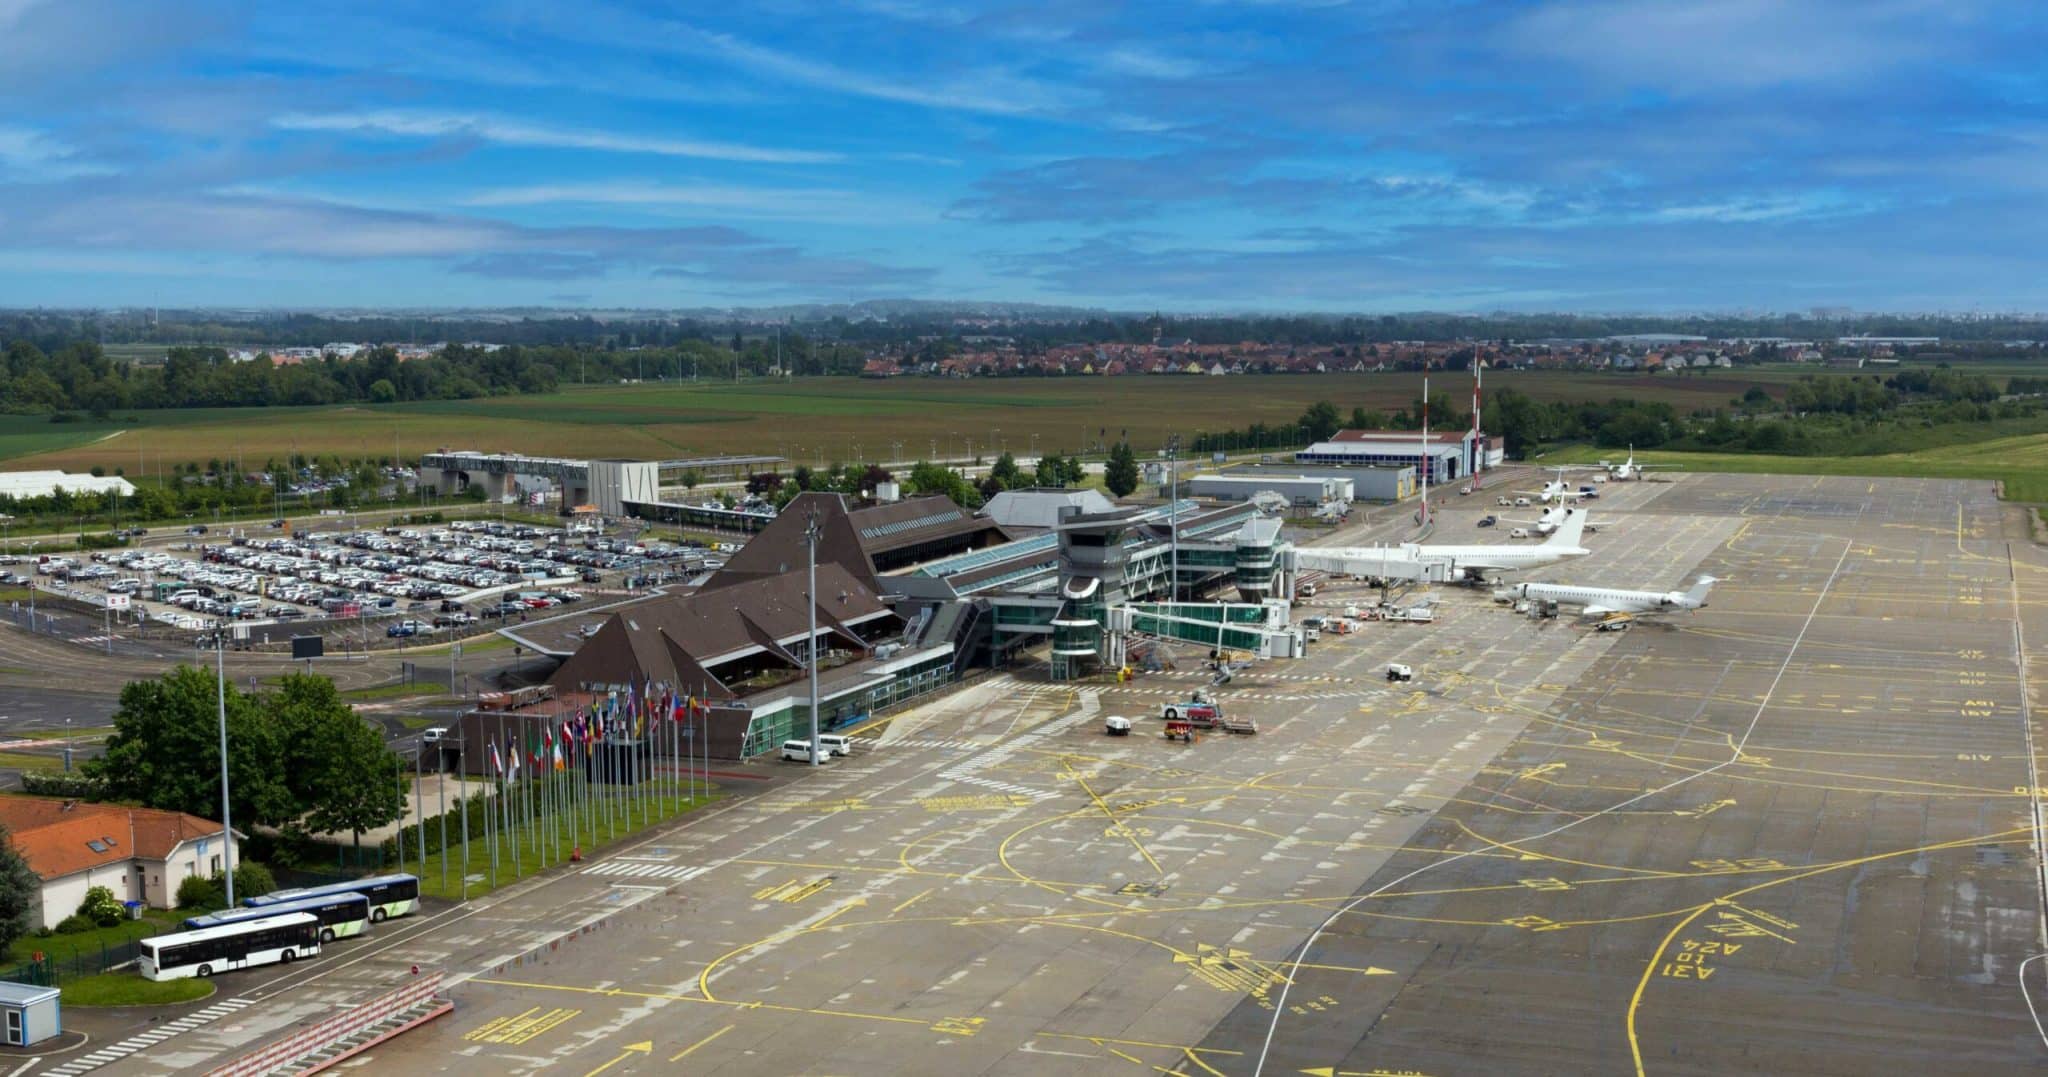 Aeroportul din Strasbourg a fost închis în perioada 14 martie - 14 aprilie pentru renovarea pistei